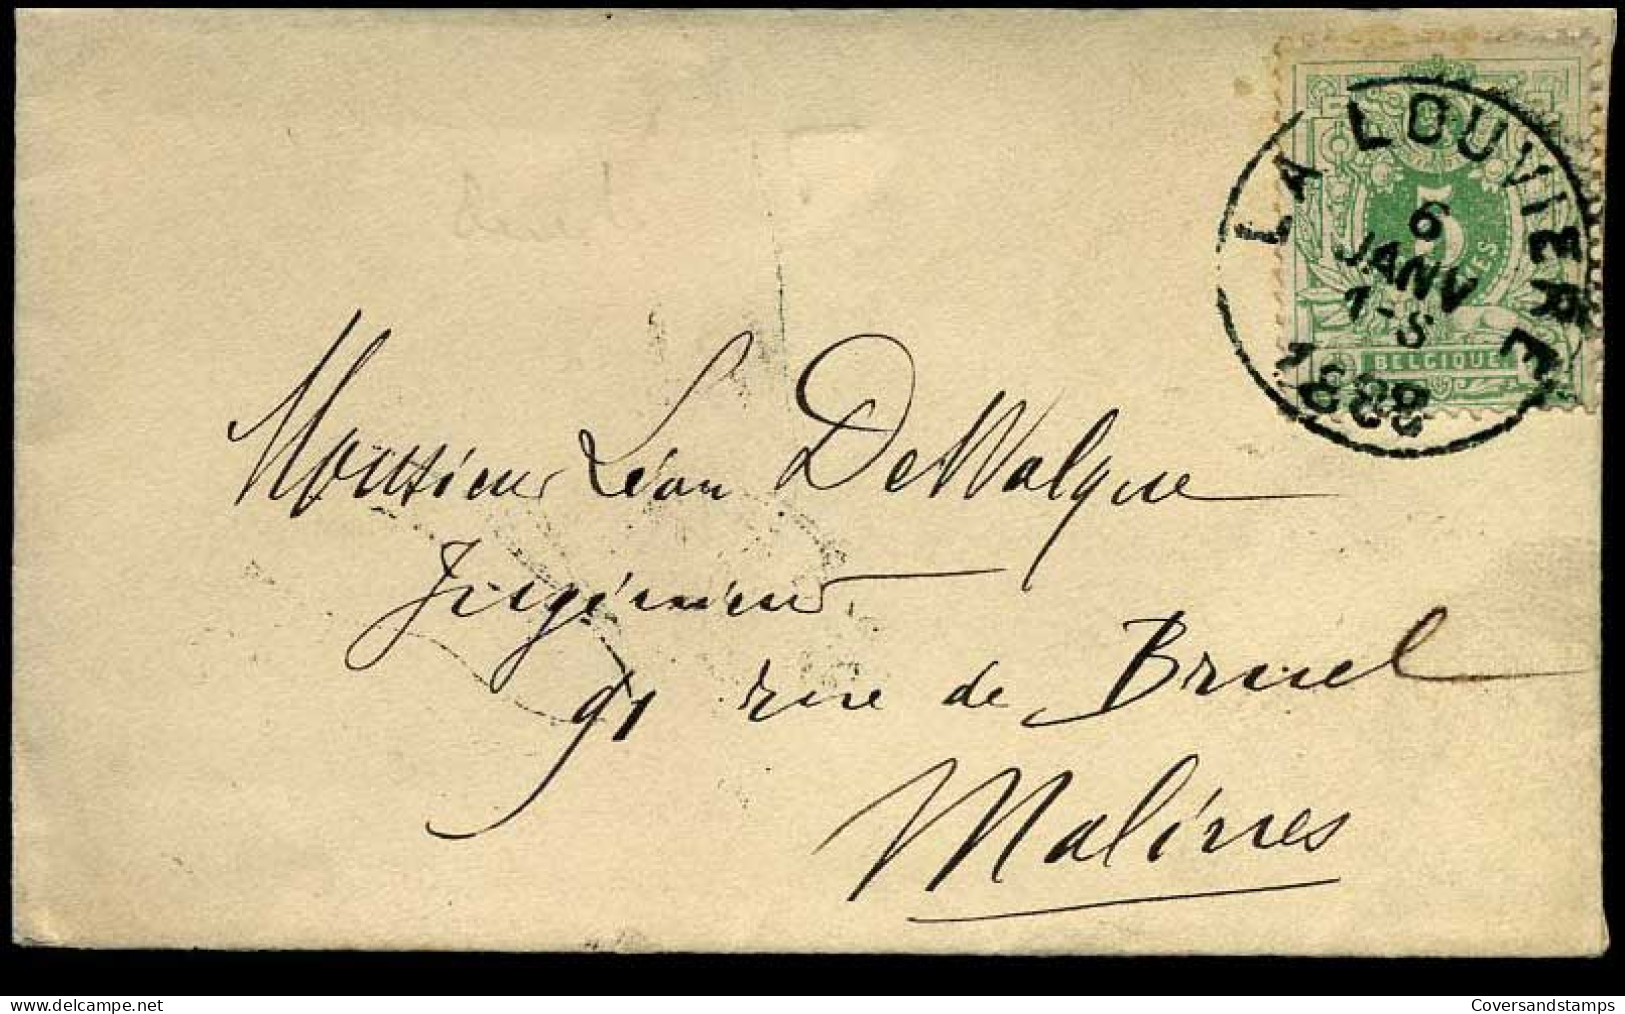 Kleine Envelop / Petite Enveloppe Met N° 45 - 1869-1888 Lying Lion